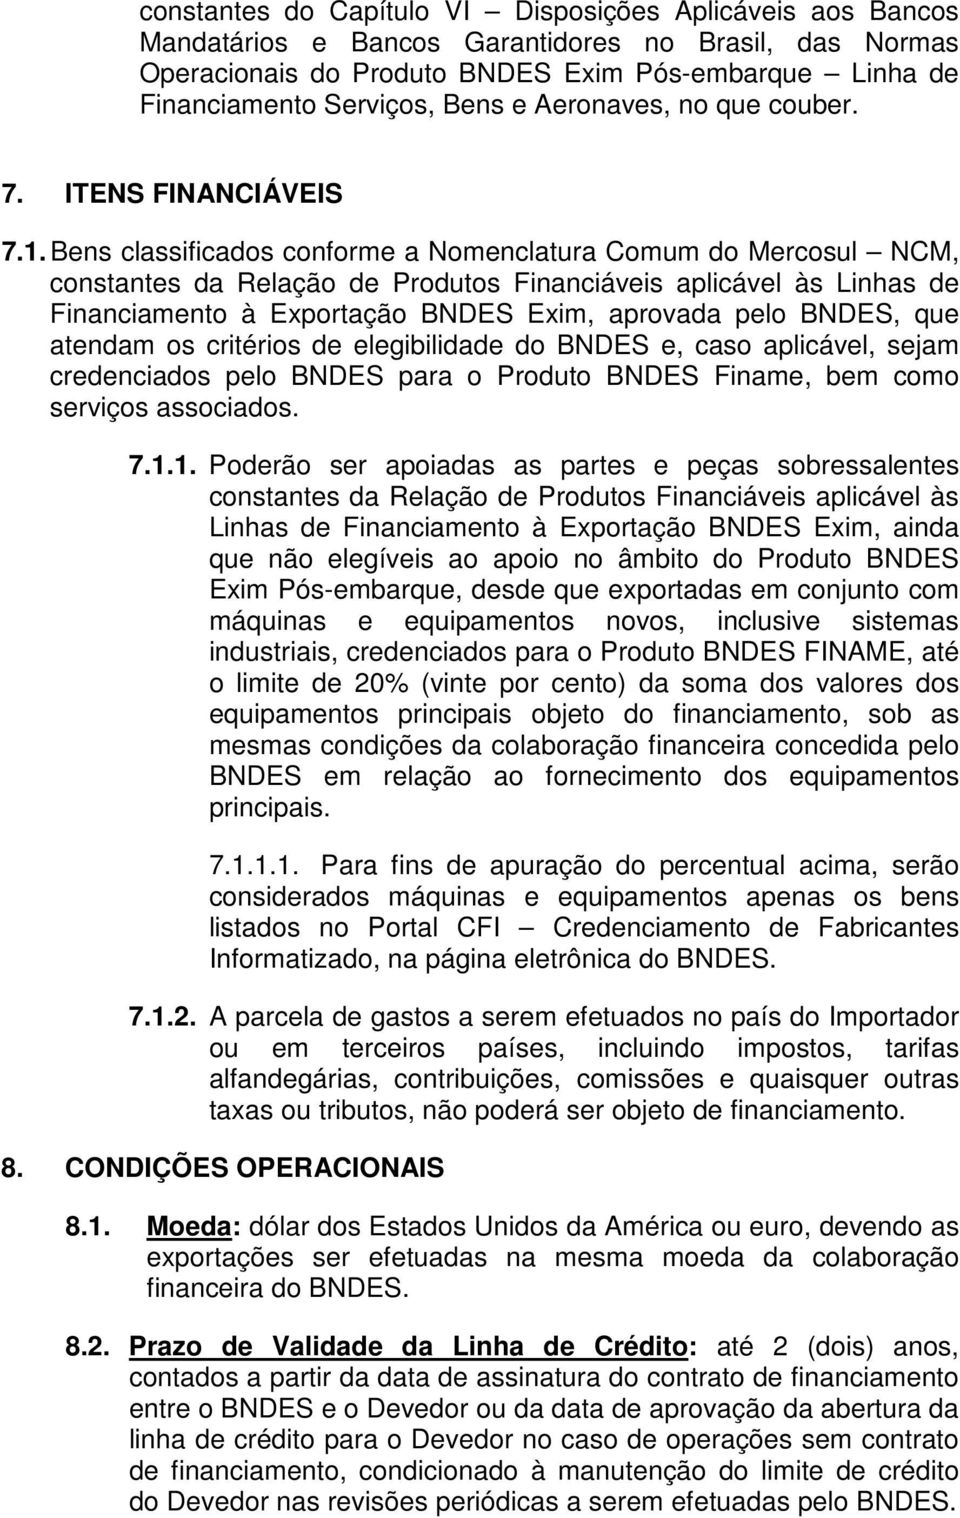 Bens classificados conforme a Nomenclatura Comum do Mercosul NCM, constantes da Relação de Produtos Financiáveis aplicável às Linhas de Financiamento à Exportação BNDES Exim, aprovada pelo BNDES, que